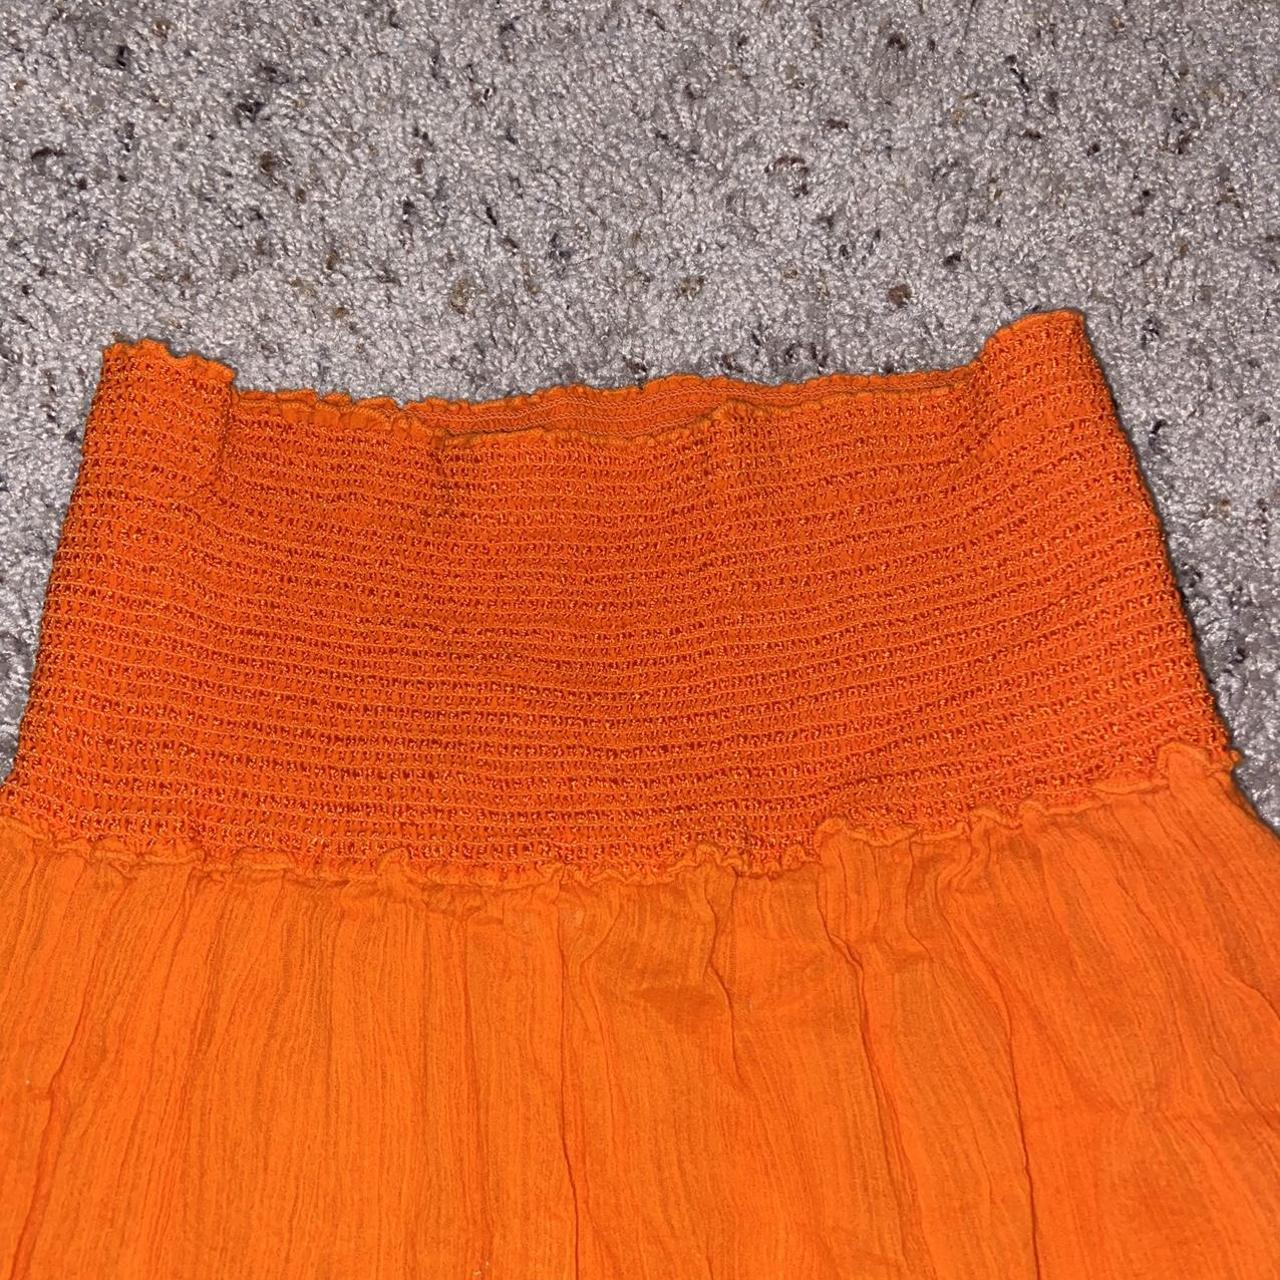 Gorgeous Ralph Lauren Maxi Skirt • Size medium •... - Depop